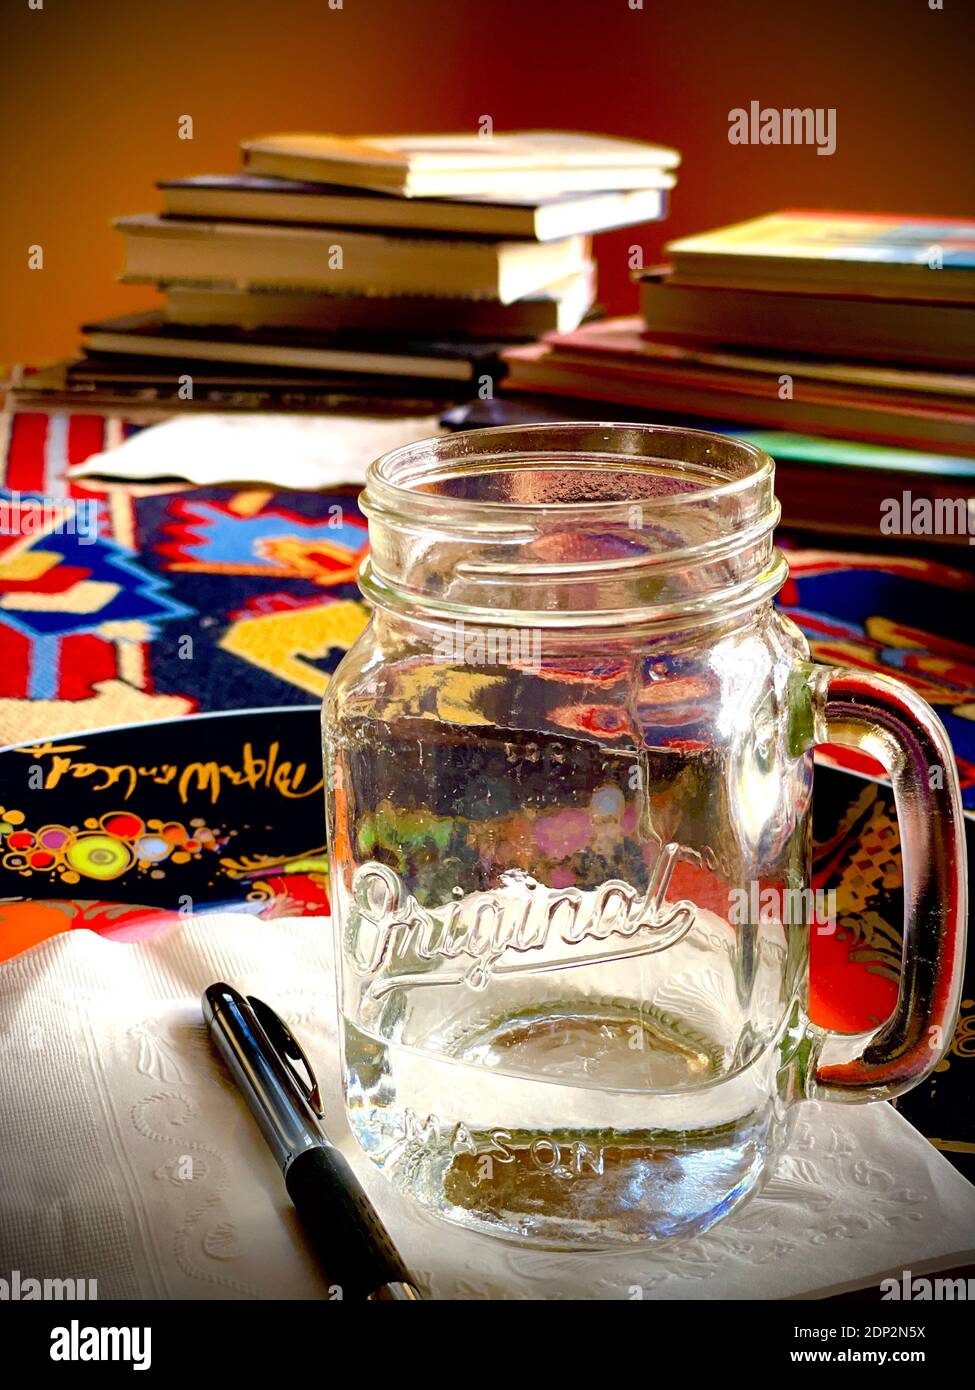 Original Mason Glas mit Griff auf buntem Material mit Stapel von Büchern im Hintergrund. Hintergrundbeleuchtetes, vertikales Farbfoto Stockfoto